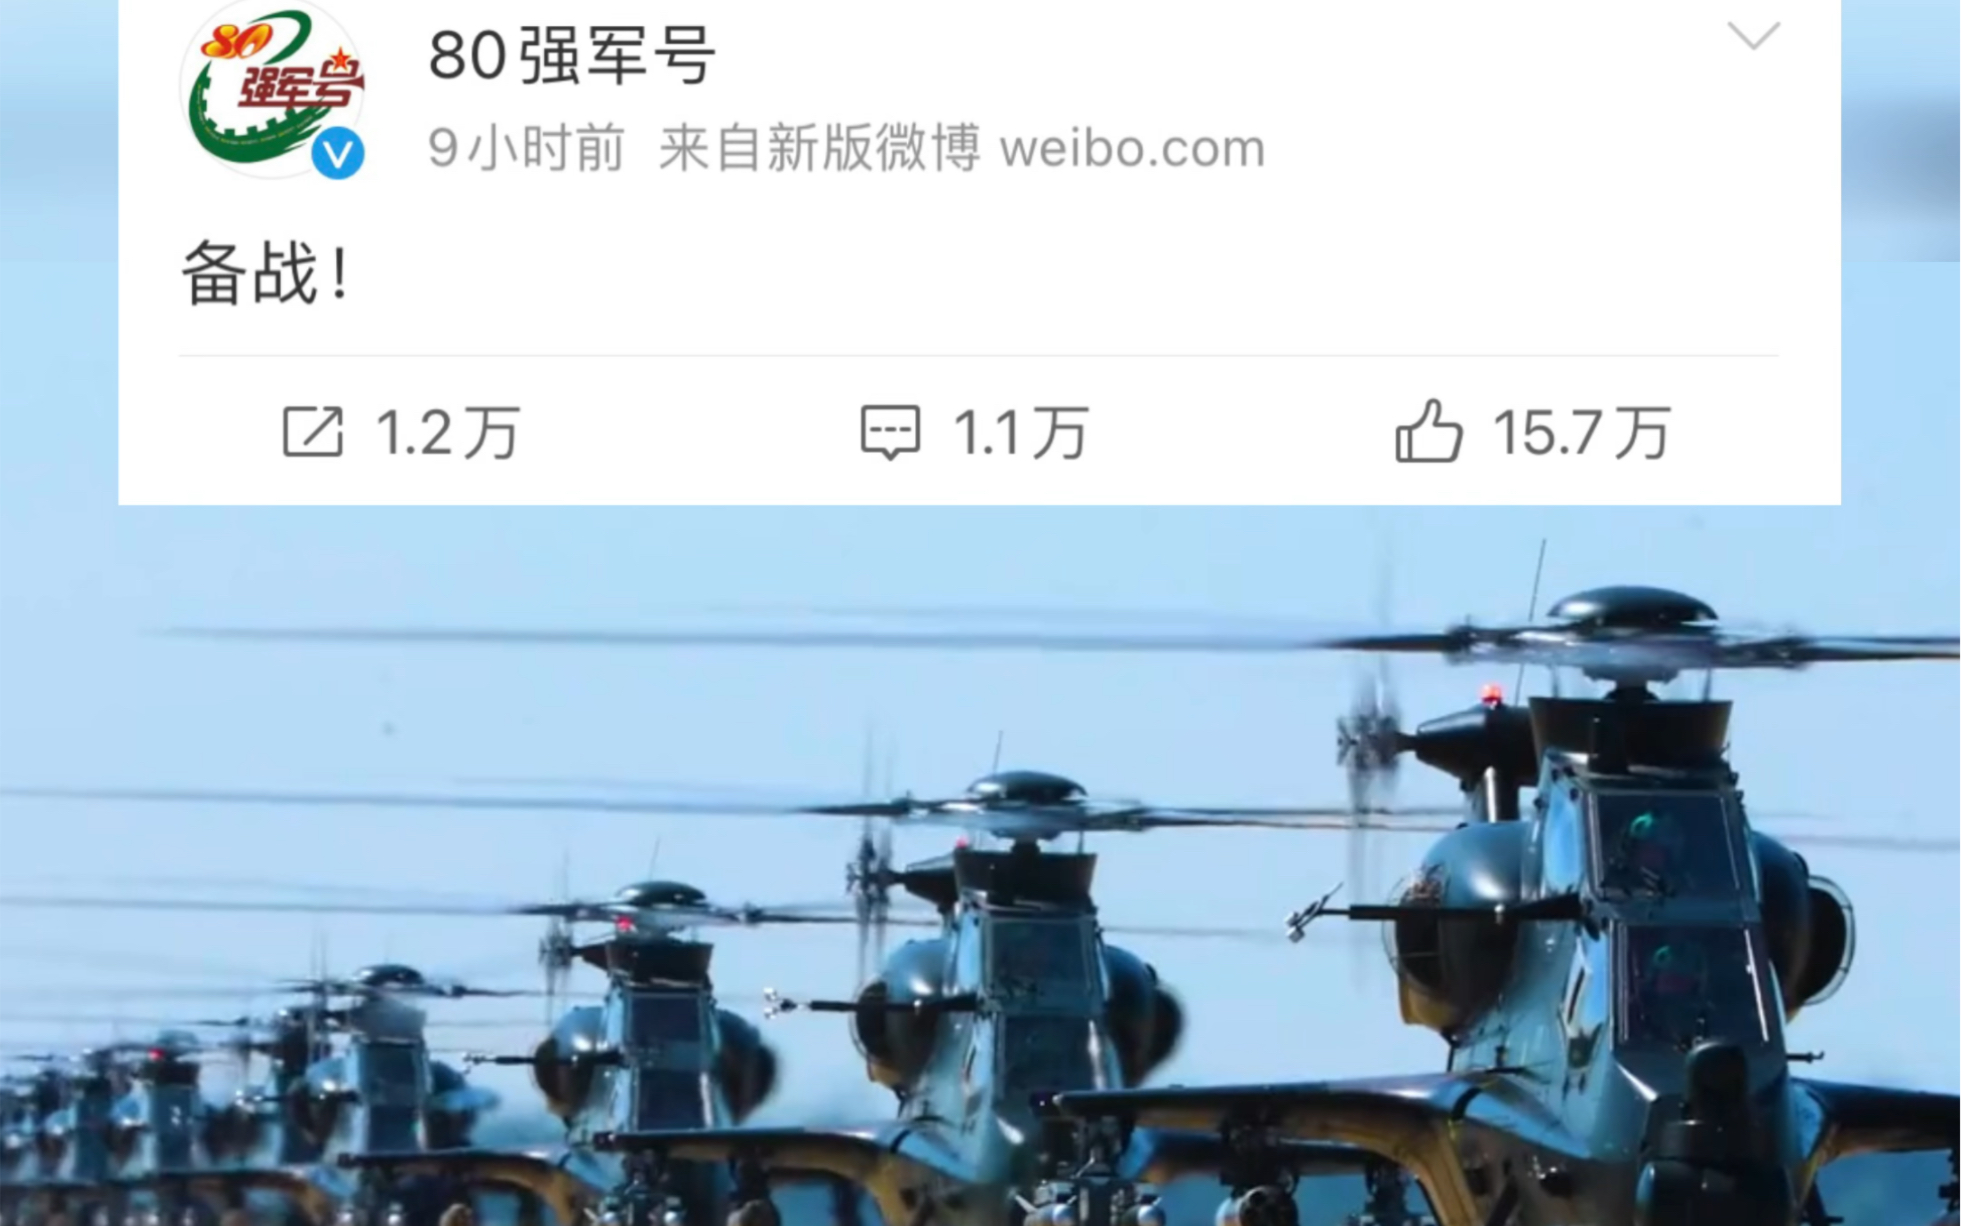 “备战”！中国人民解放军陆军第80集团军发布2字微博！仅9小时就有超15万网友点赞